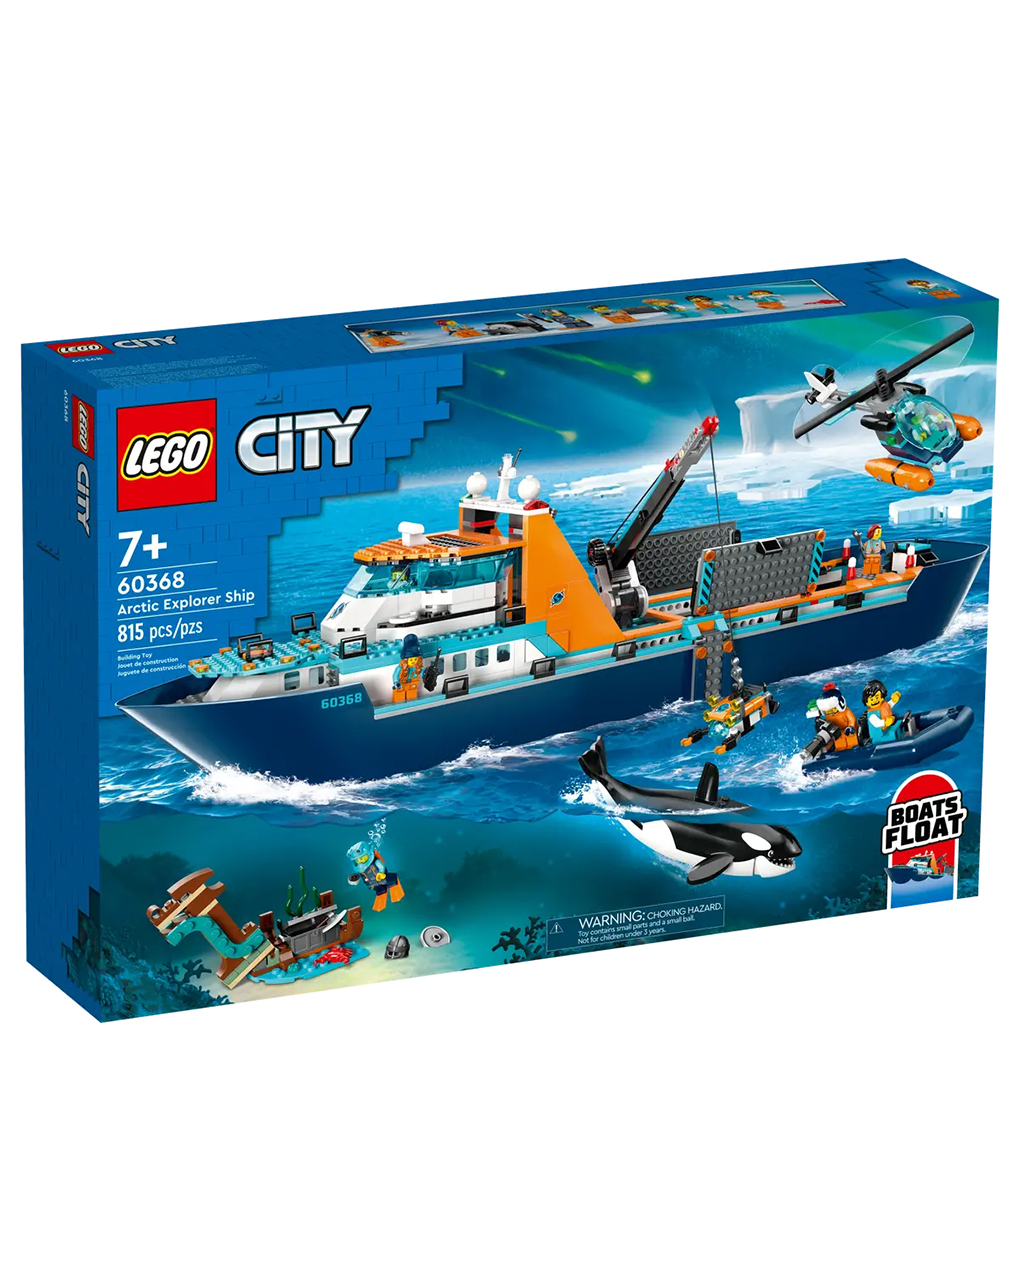 Lego city πλοίο αρκτικής εξερεύνησης 60368 - Lego, Lego City